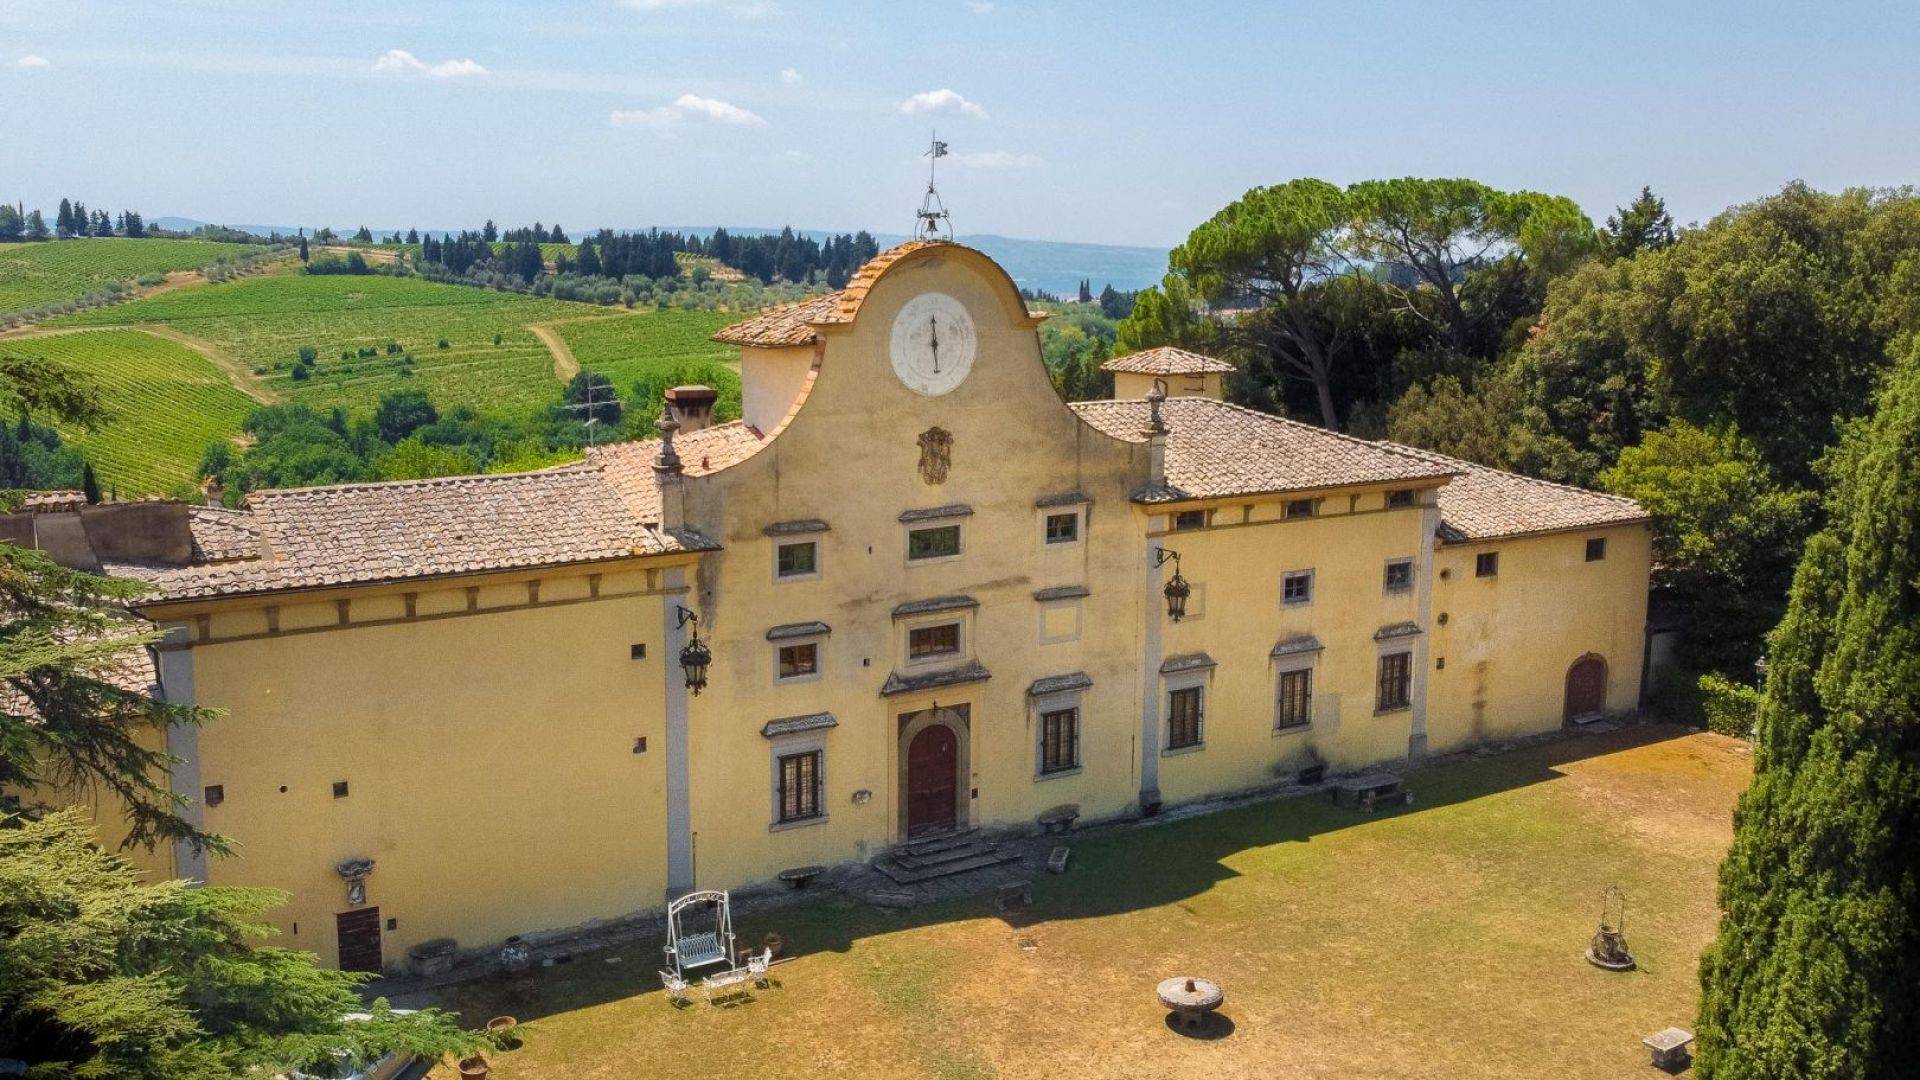 Prestigious and historic villa for sale in the heart of Chianti. The Villa, dating back to 1580, originally belonged to the noble Naldini.